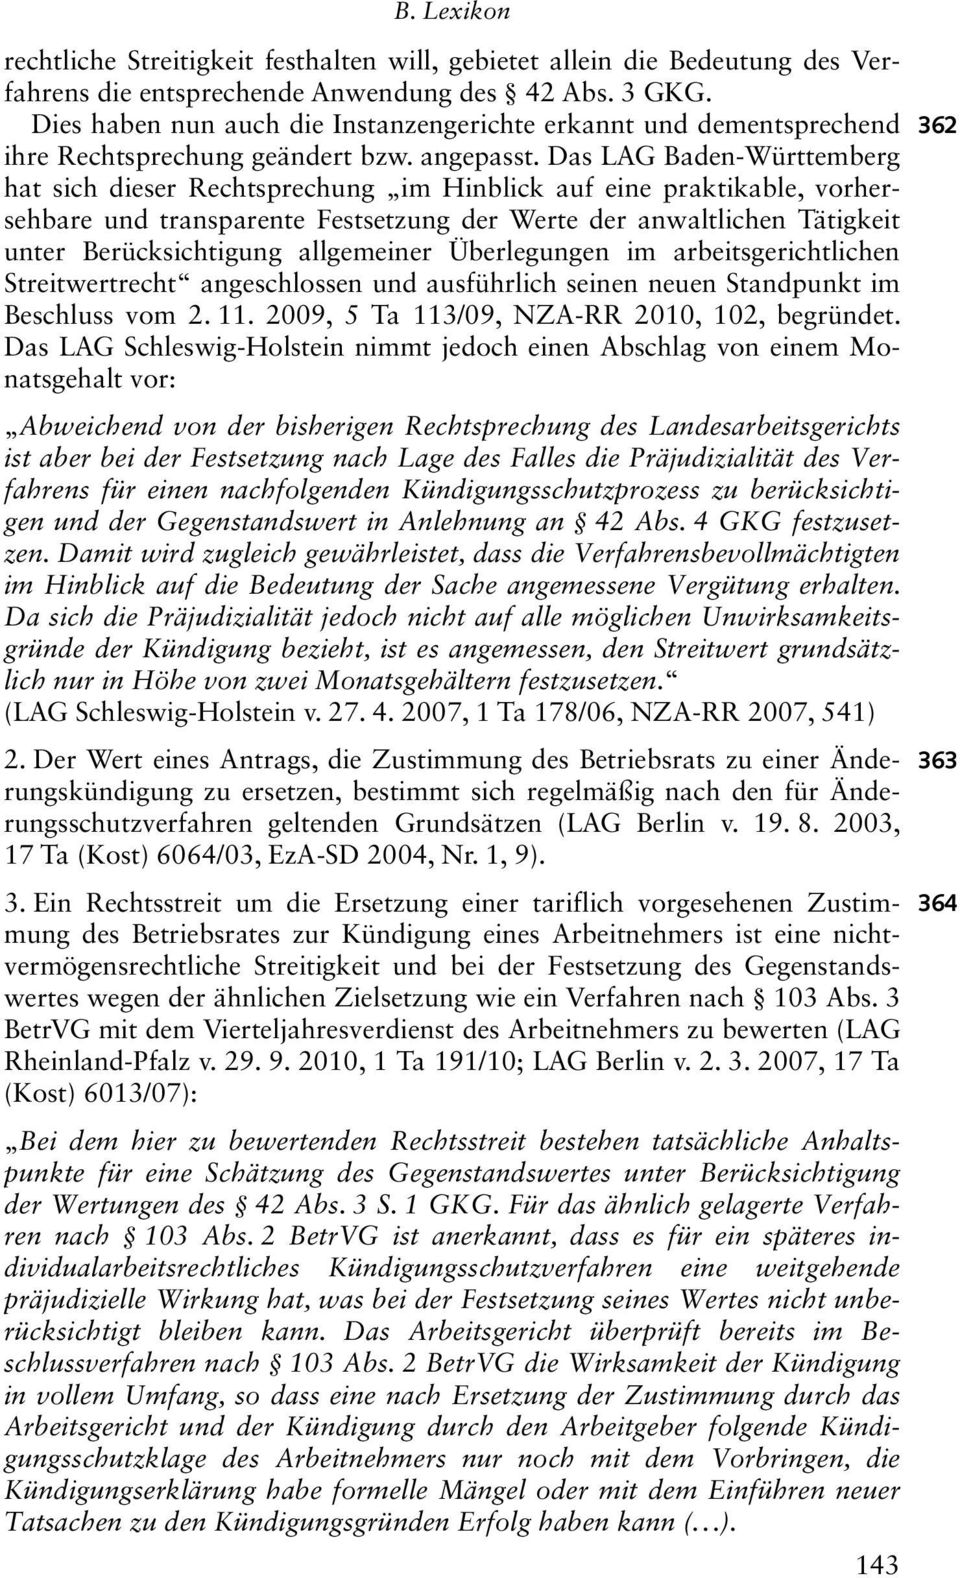 Das LAG Baden-Württemberg hat sich dieser Rechtsprechung im Hinblick auf eine praktikable, vorhersehbare und transparente Festsetzung der Werte der anwaltlichen Tätigkeit unter Berücksichtigung